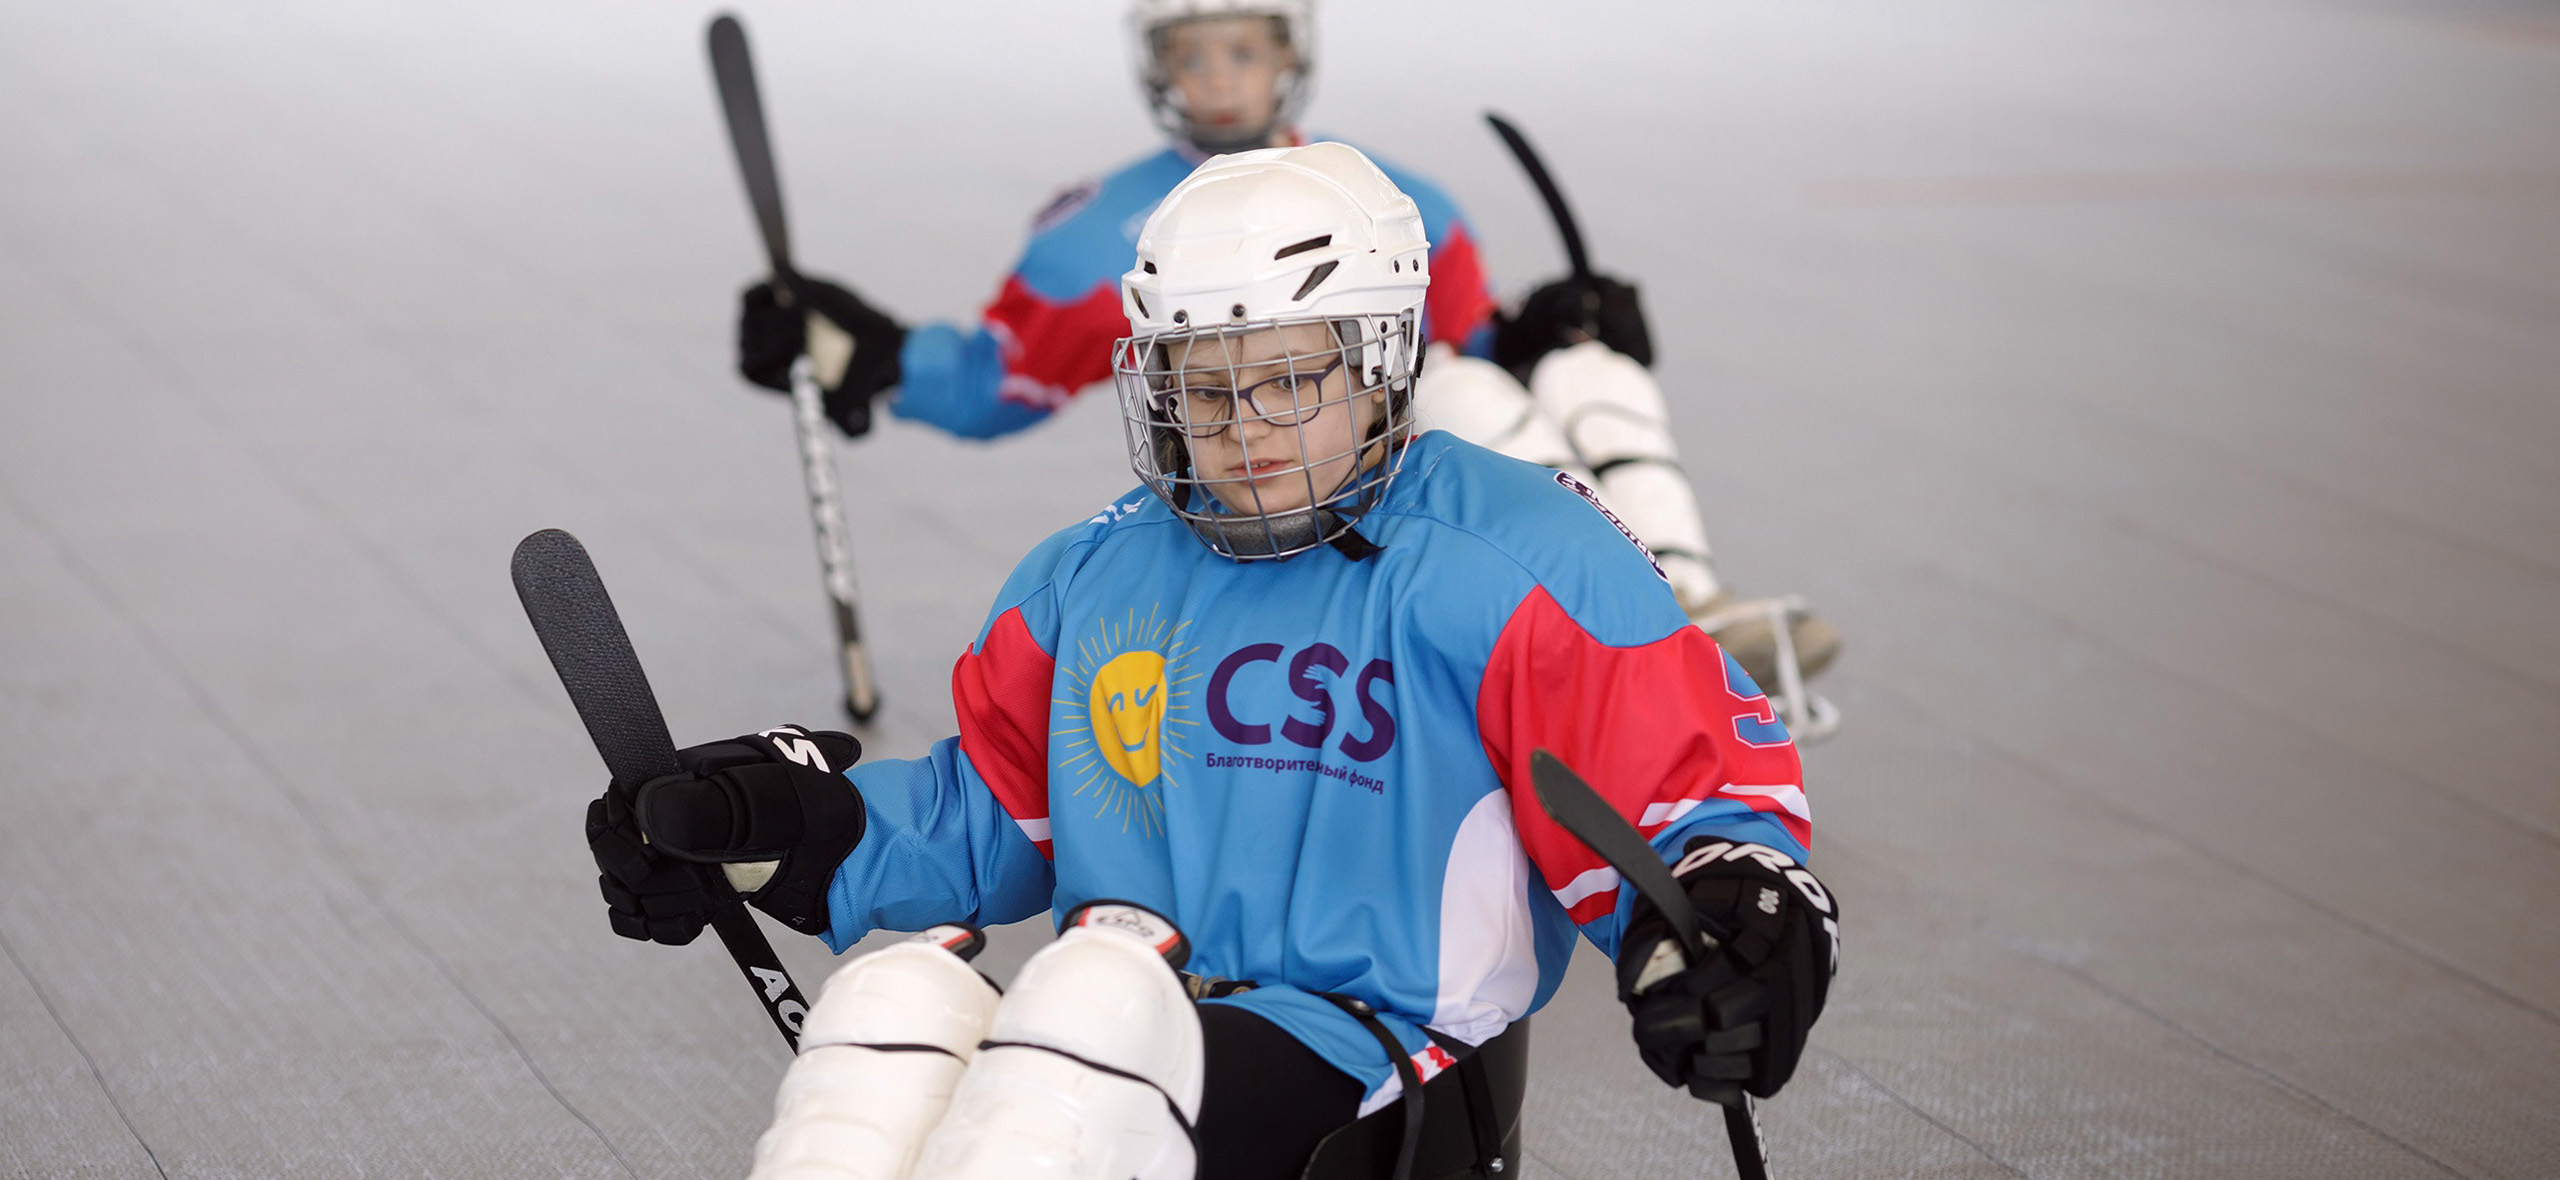 Картинг, футбол и фигурное катание: 7 спортивных проектов для людей с инвалидно­стью